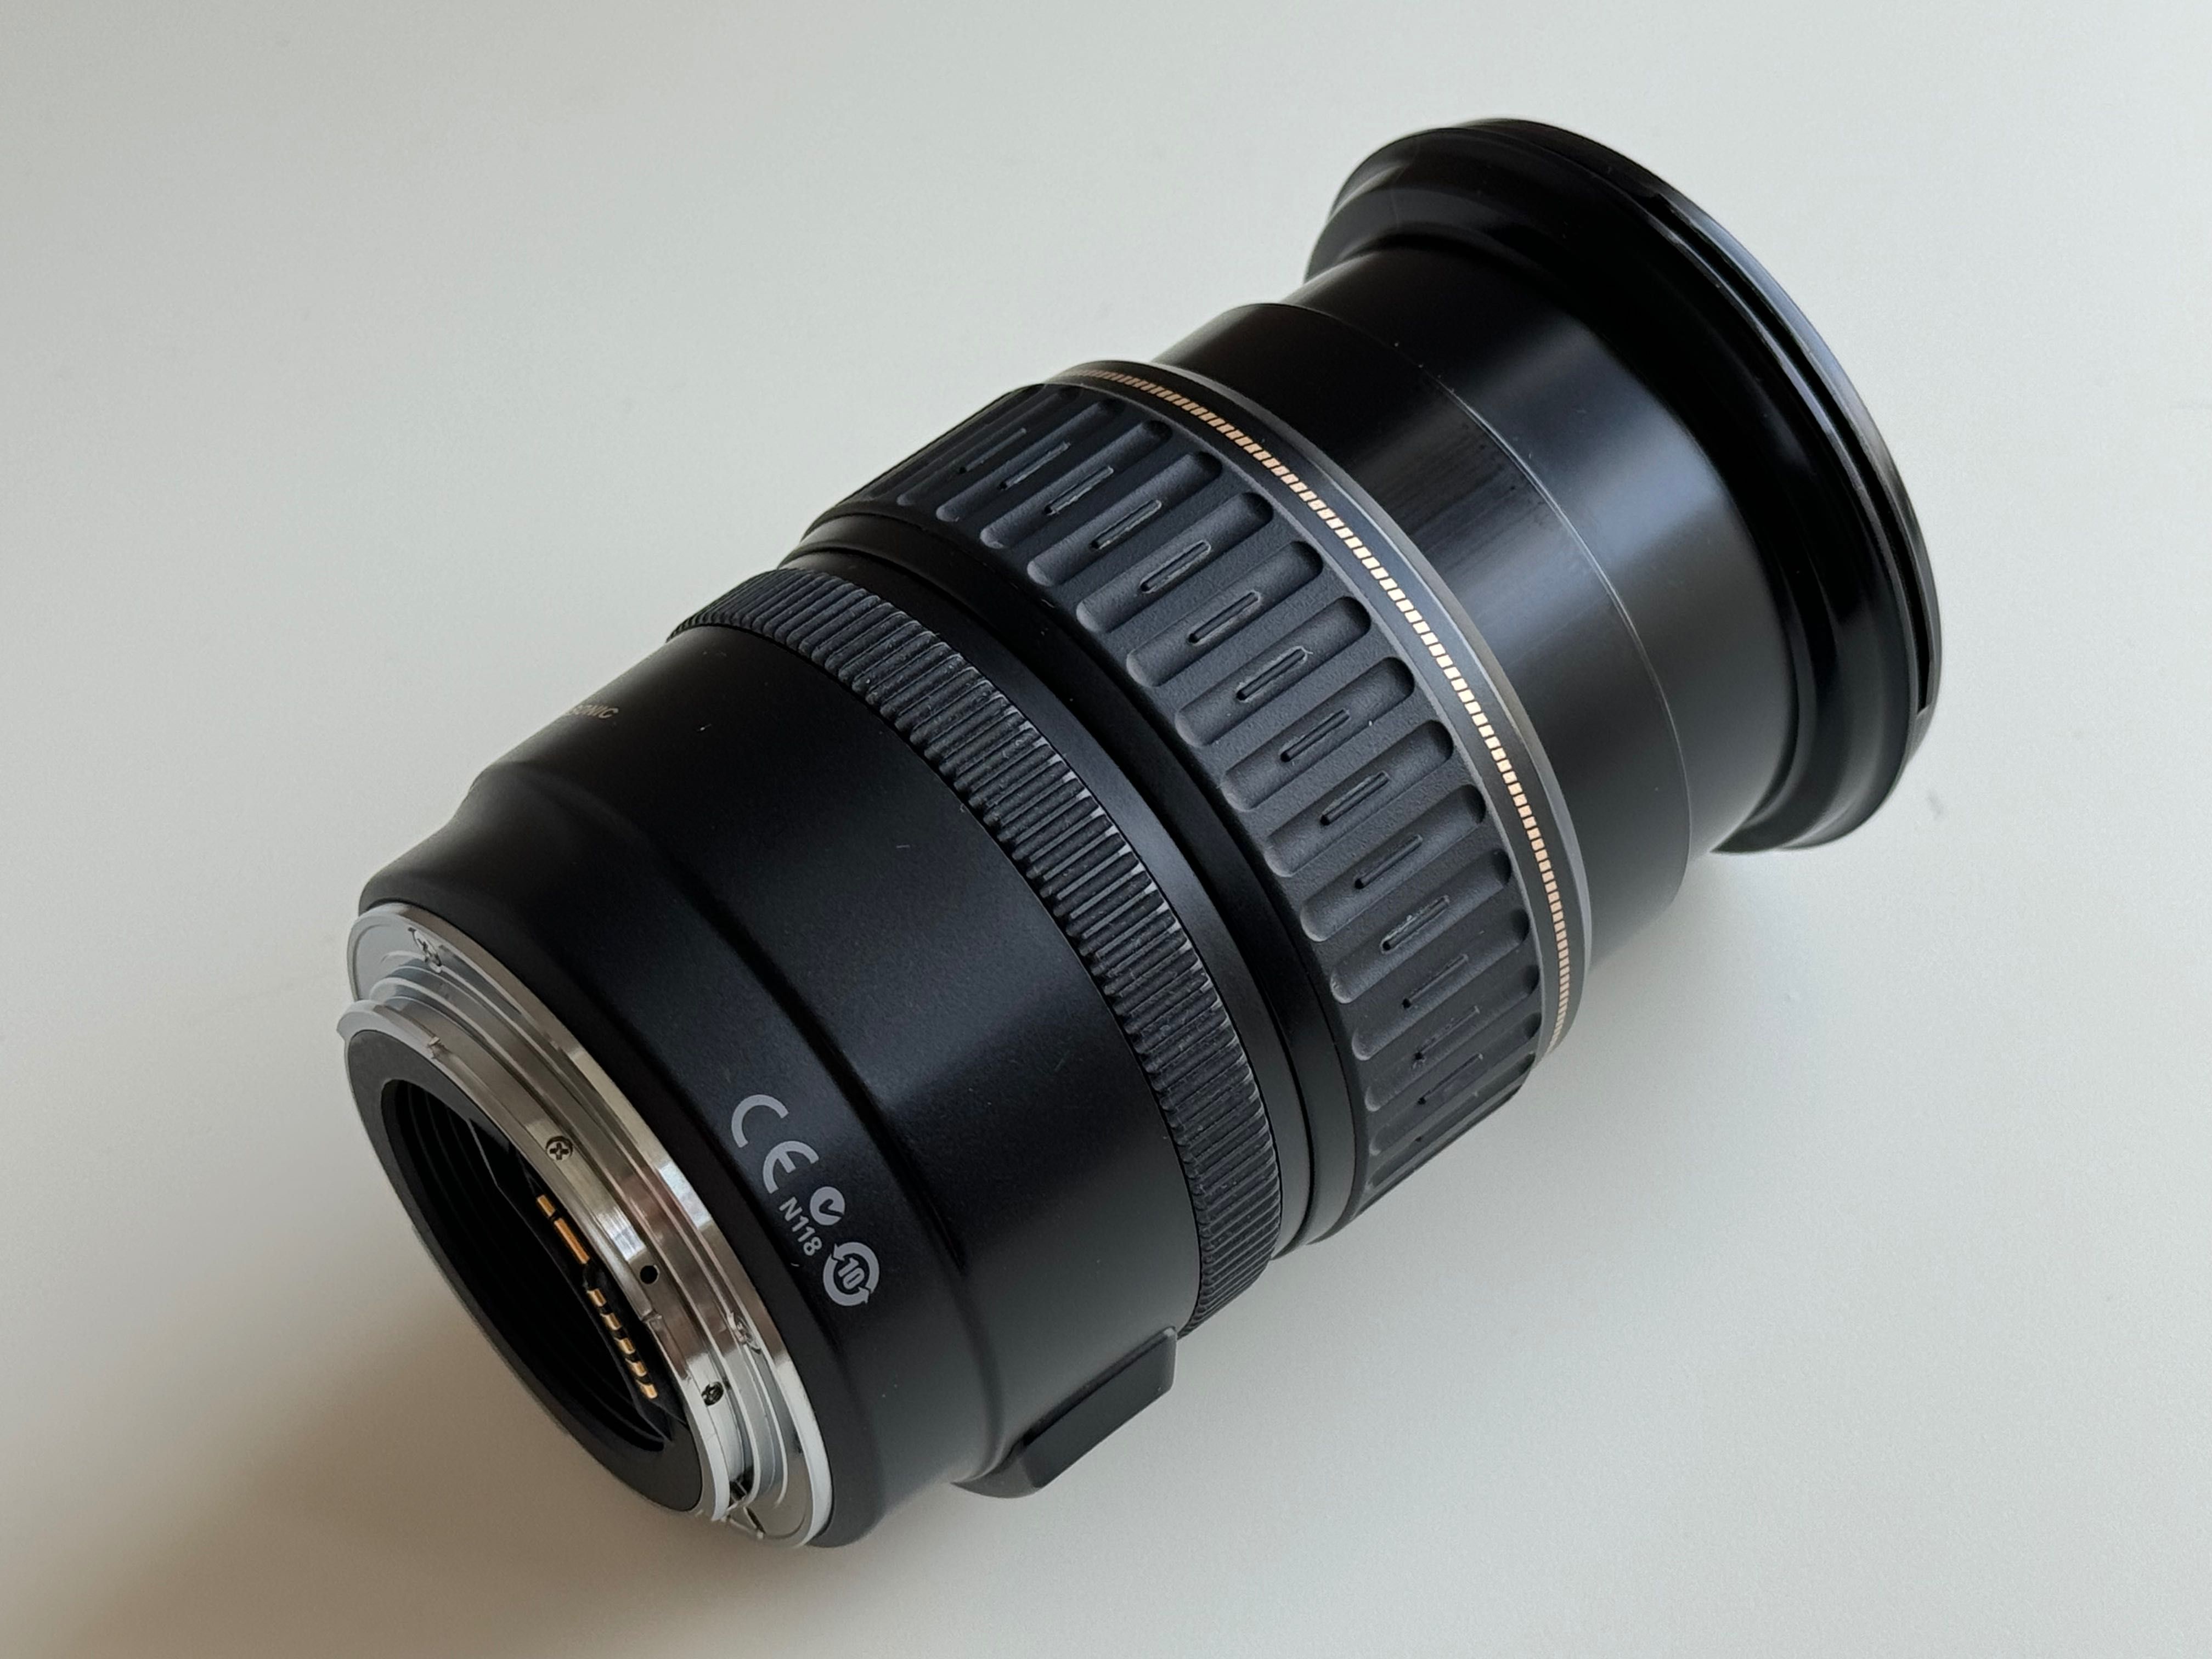 Obiektyw Canon EF 28-135 mm f/3.5-5.6 IS USM